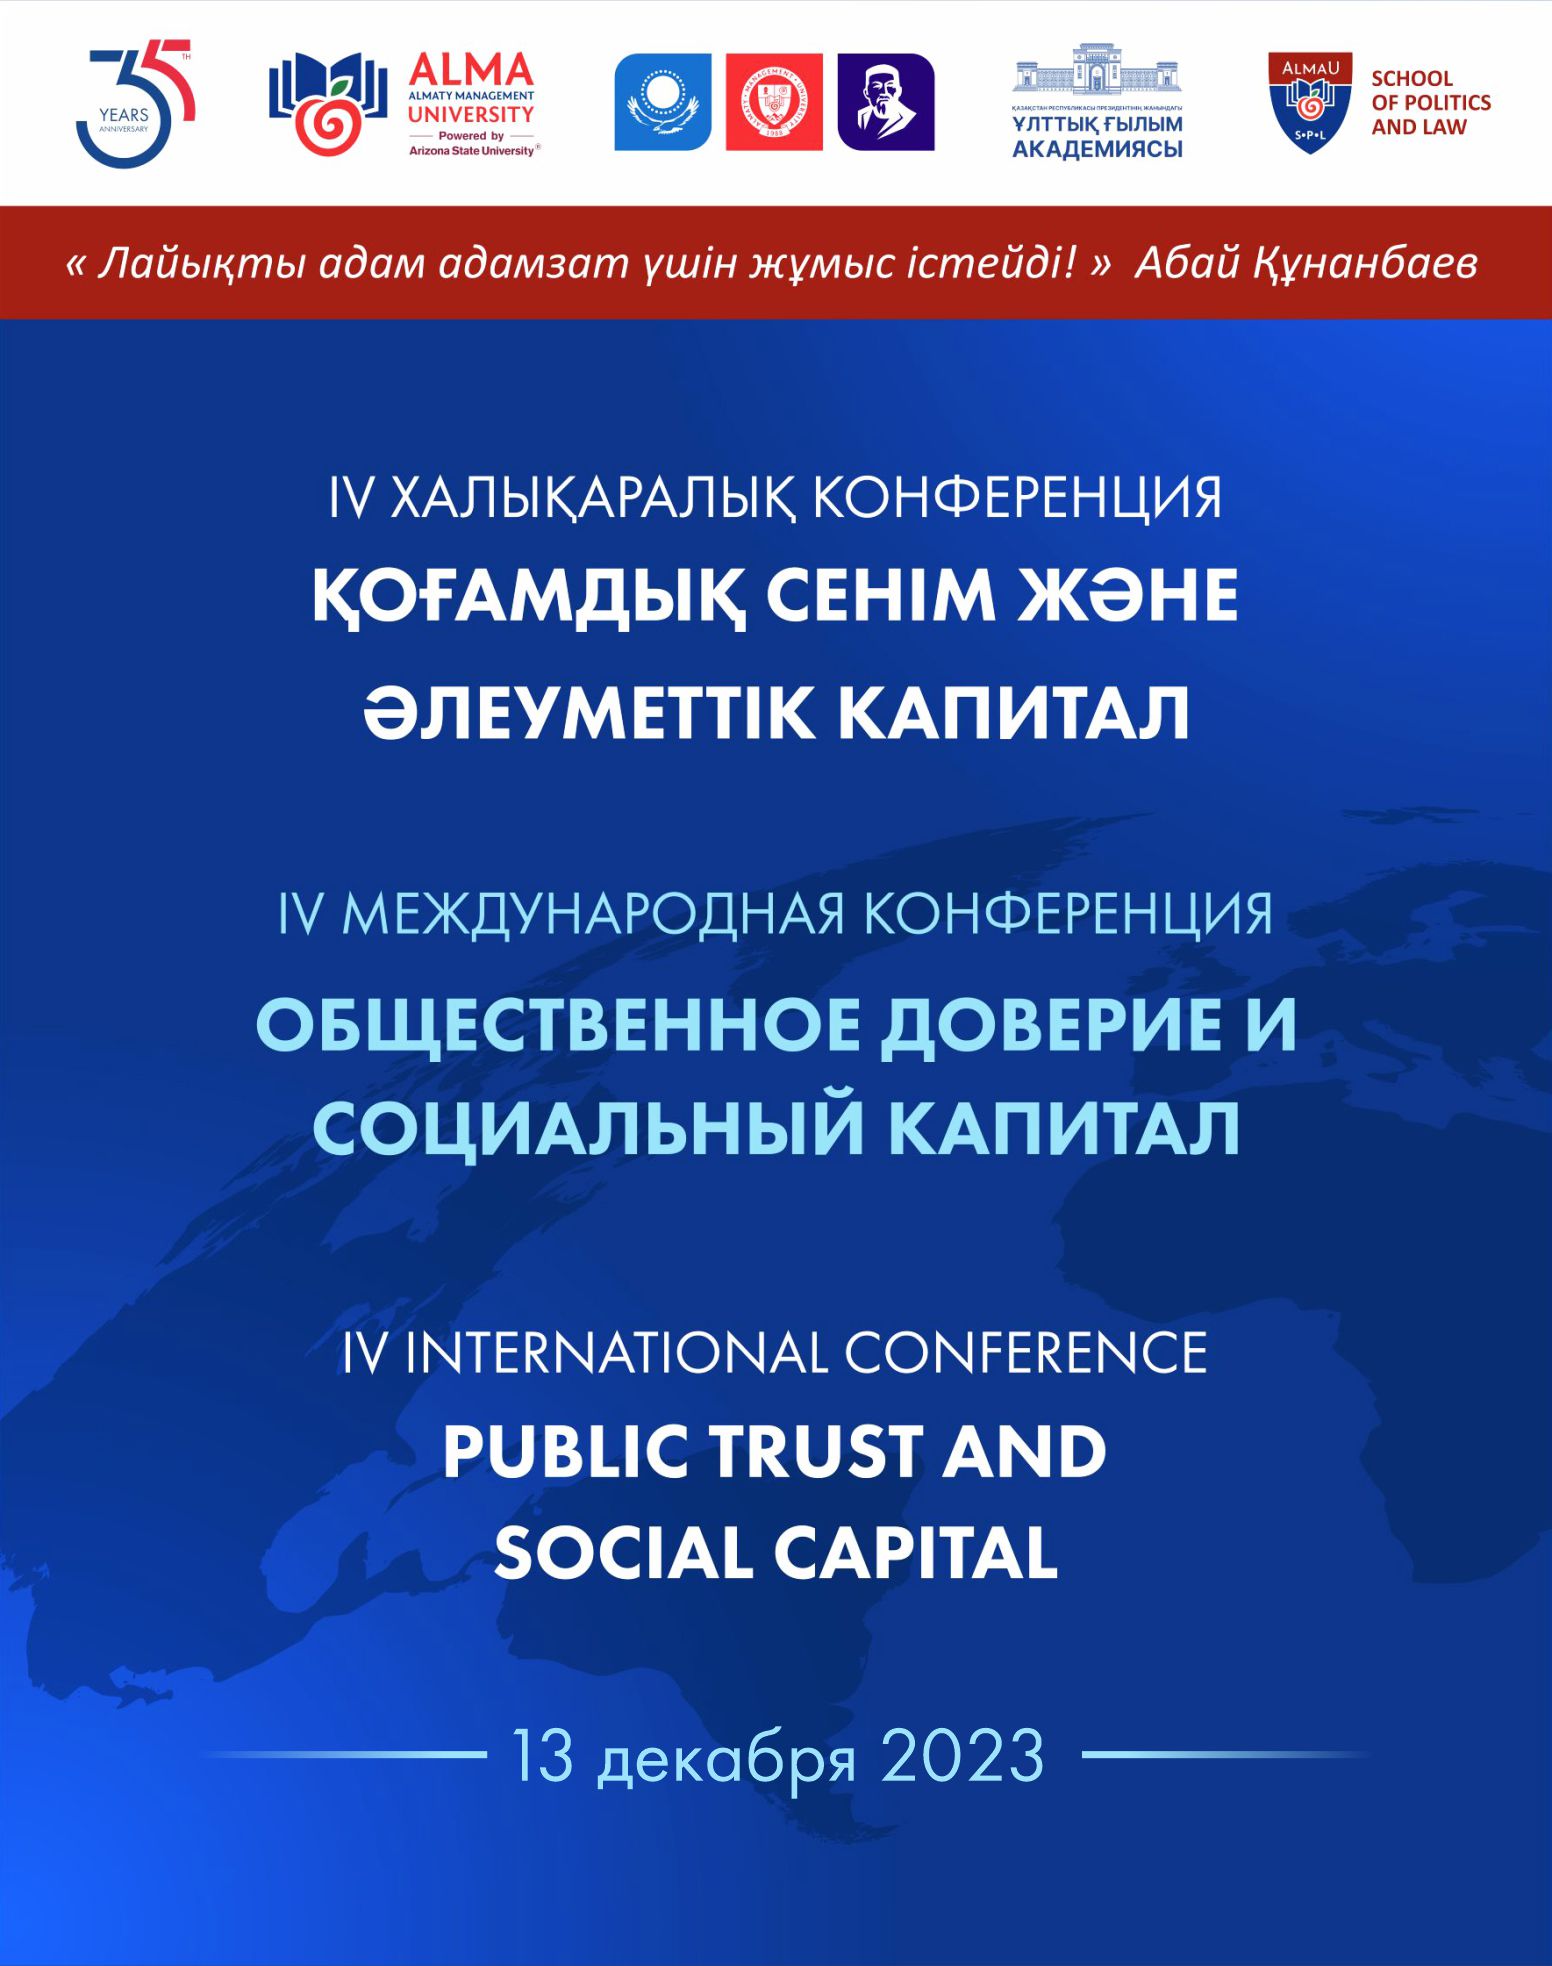  13 декабря 2023 года пройдет IV Международная конференция «Общественное доверие и социальный капитал»